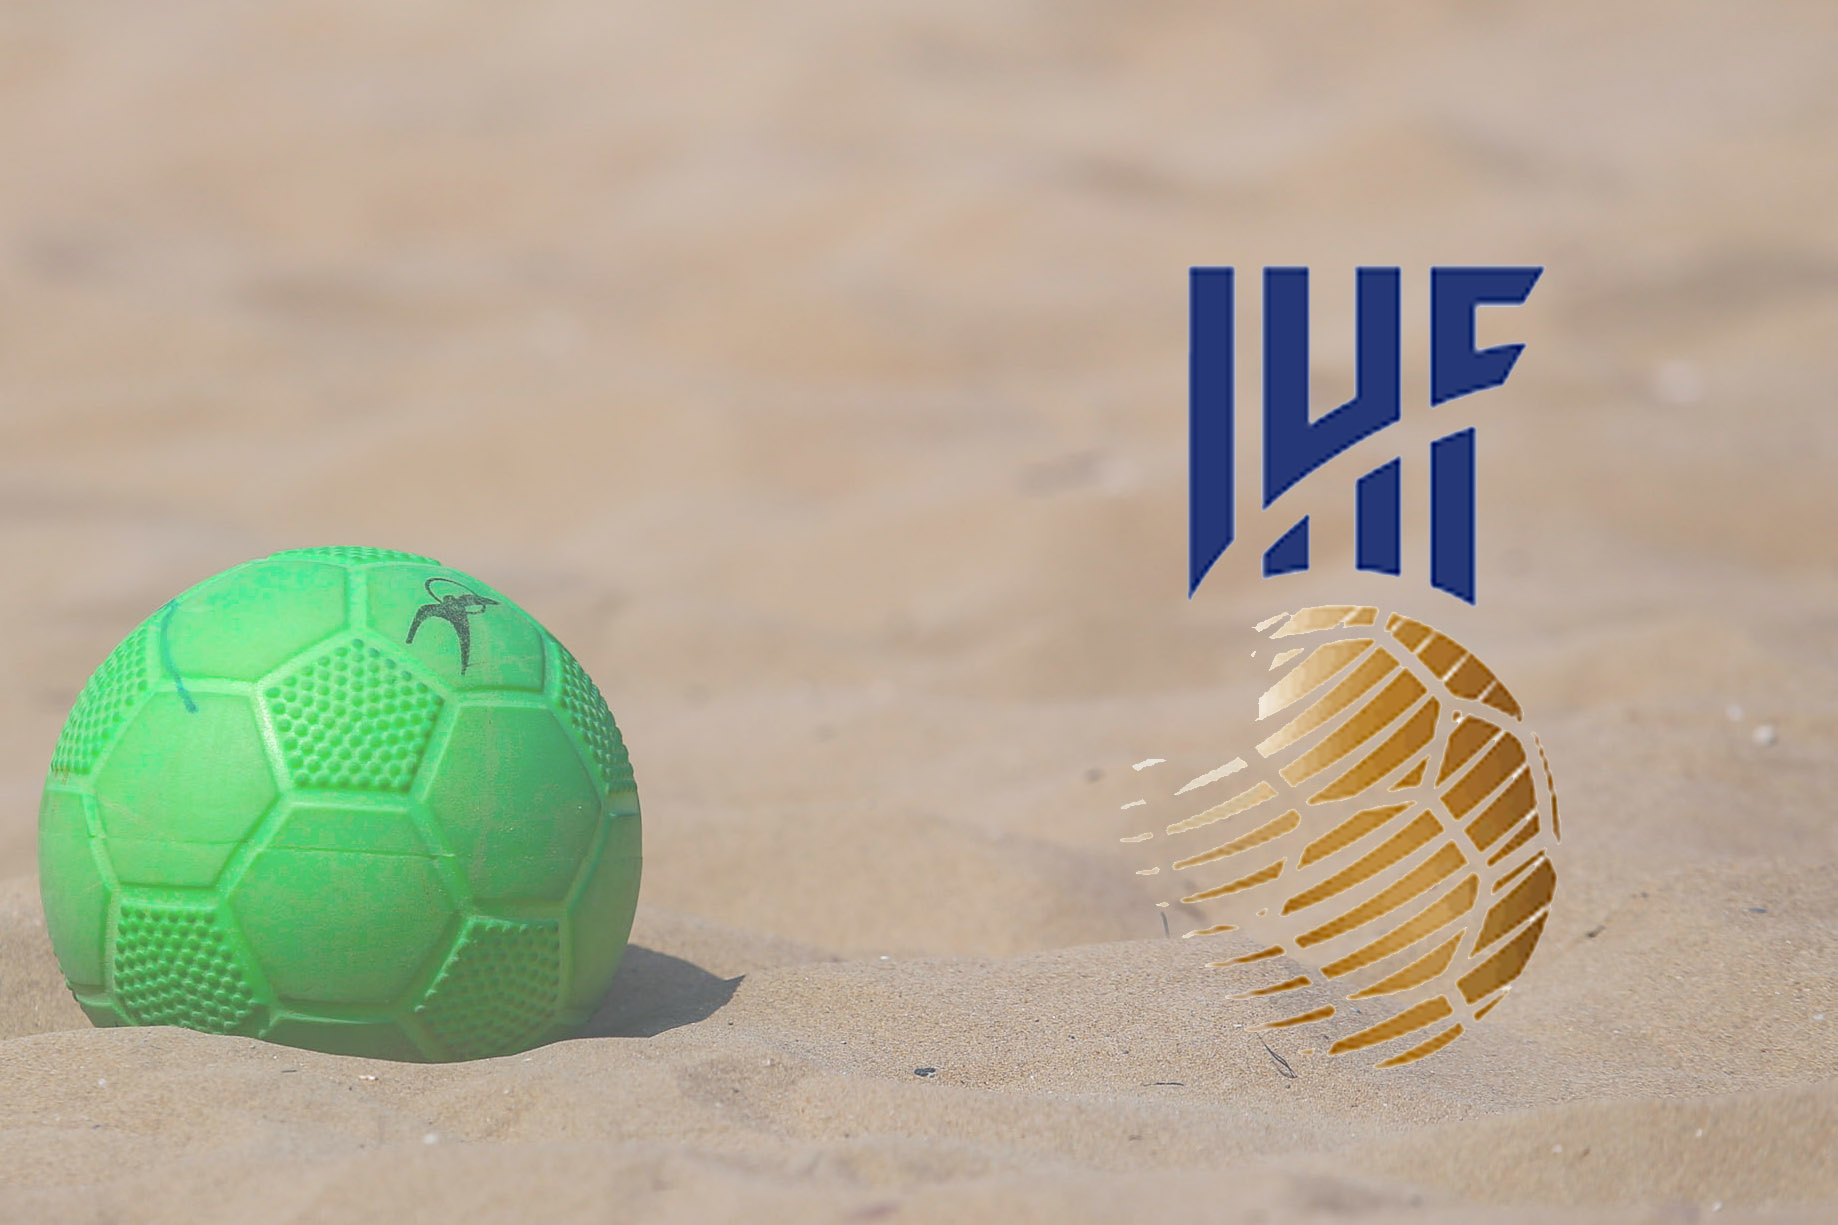 یونان، میزبان مسابقات هندبال ساحلی قهرمانی جهان ۲۰۲۲